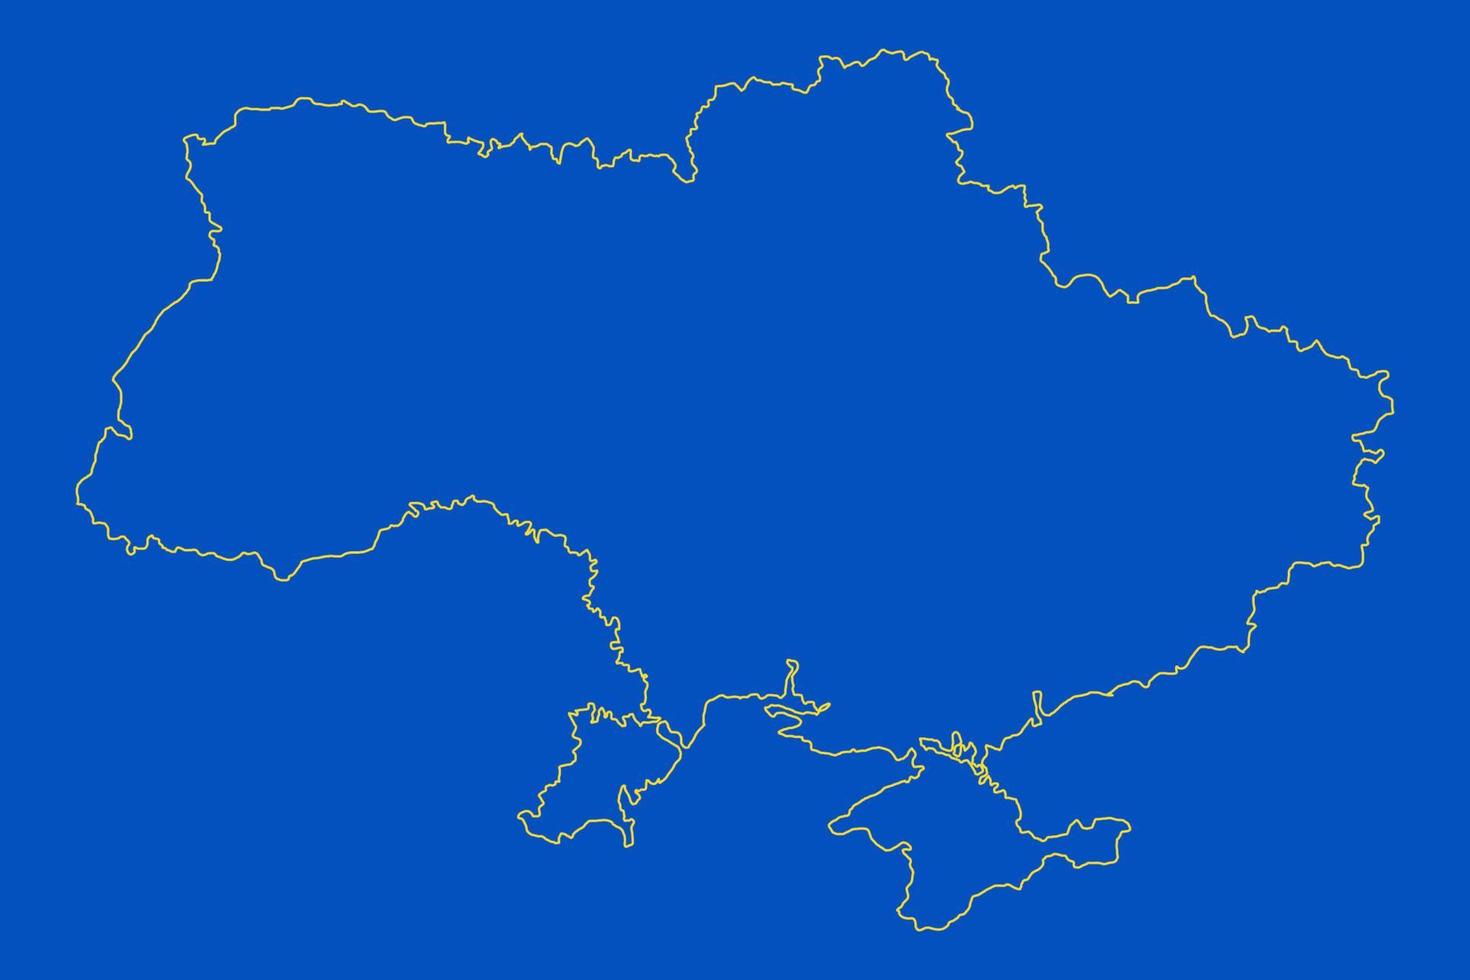 Oekraïne landkaart. Europese landen. doodle tekening overzicht schets. Oekraïne grenst aan de Krim. blauwe en gele afbeelding. vector